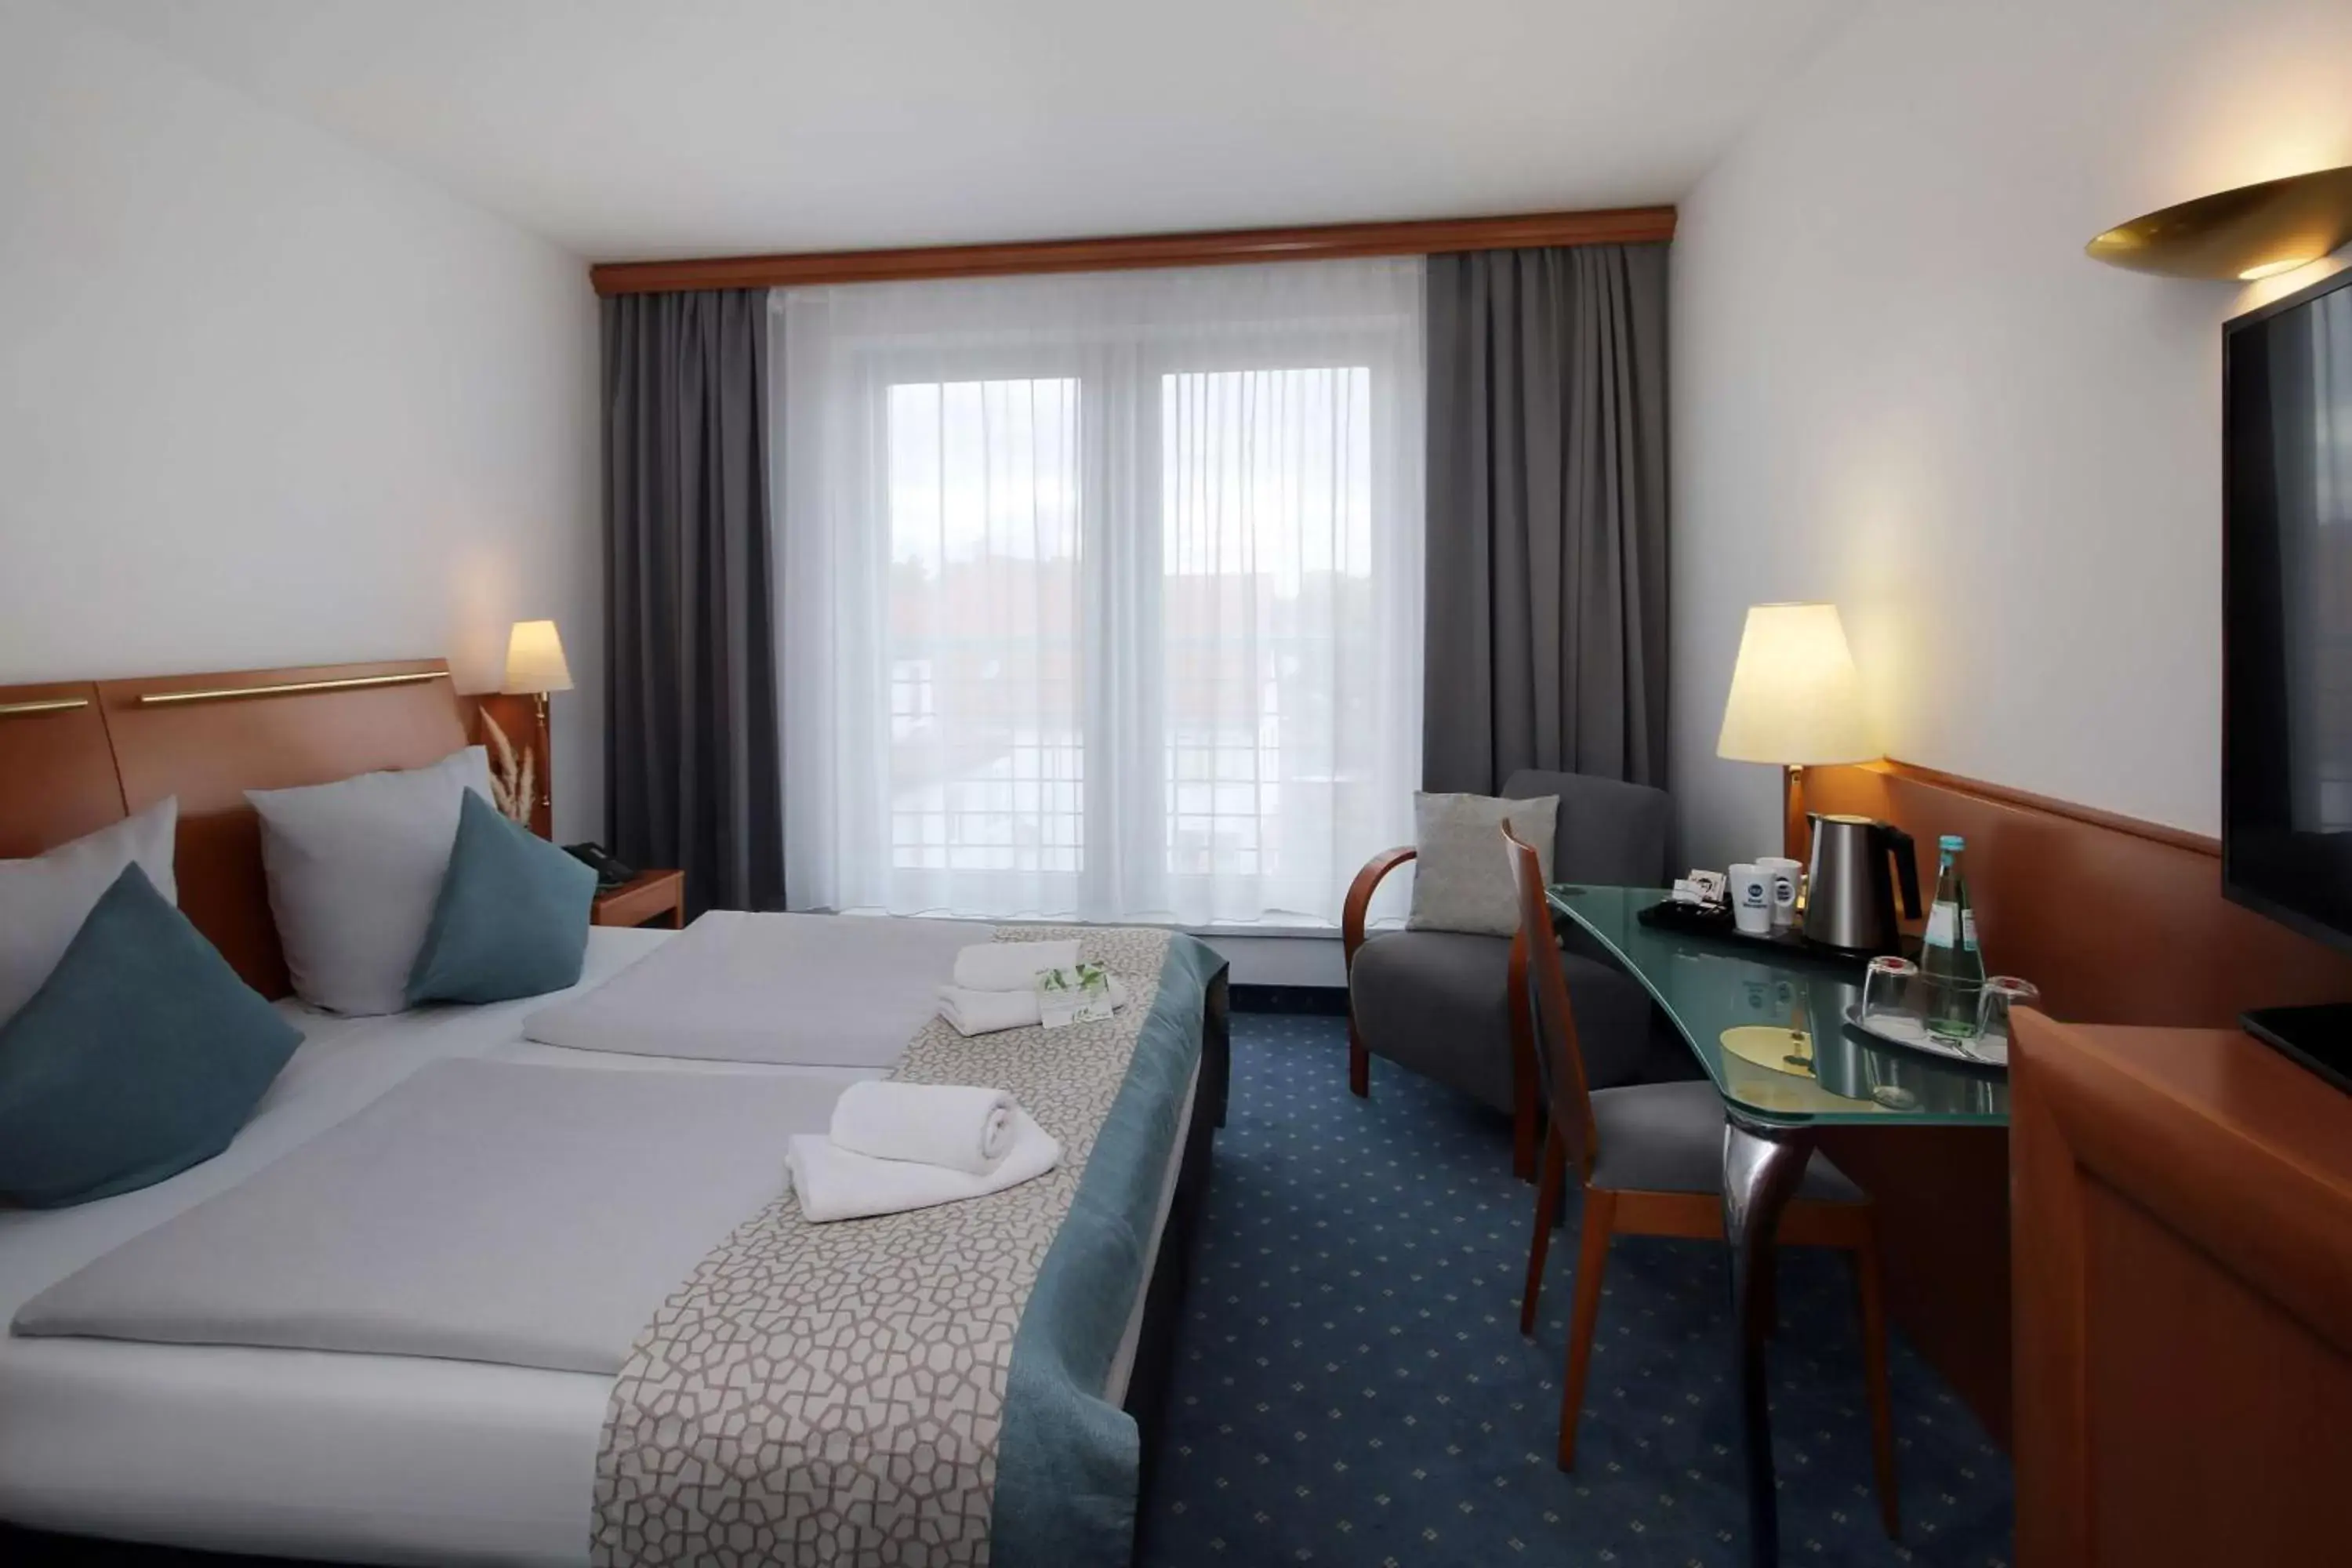 Bedroom in Best Western Hotel Halle-Merseburg